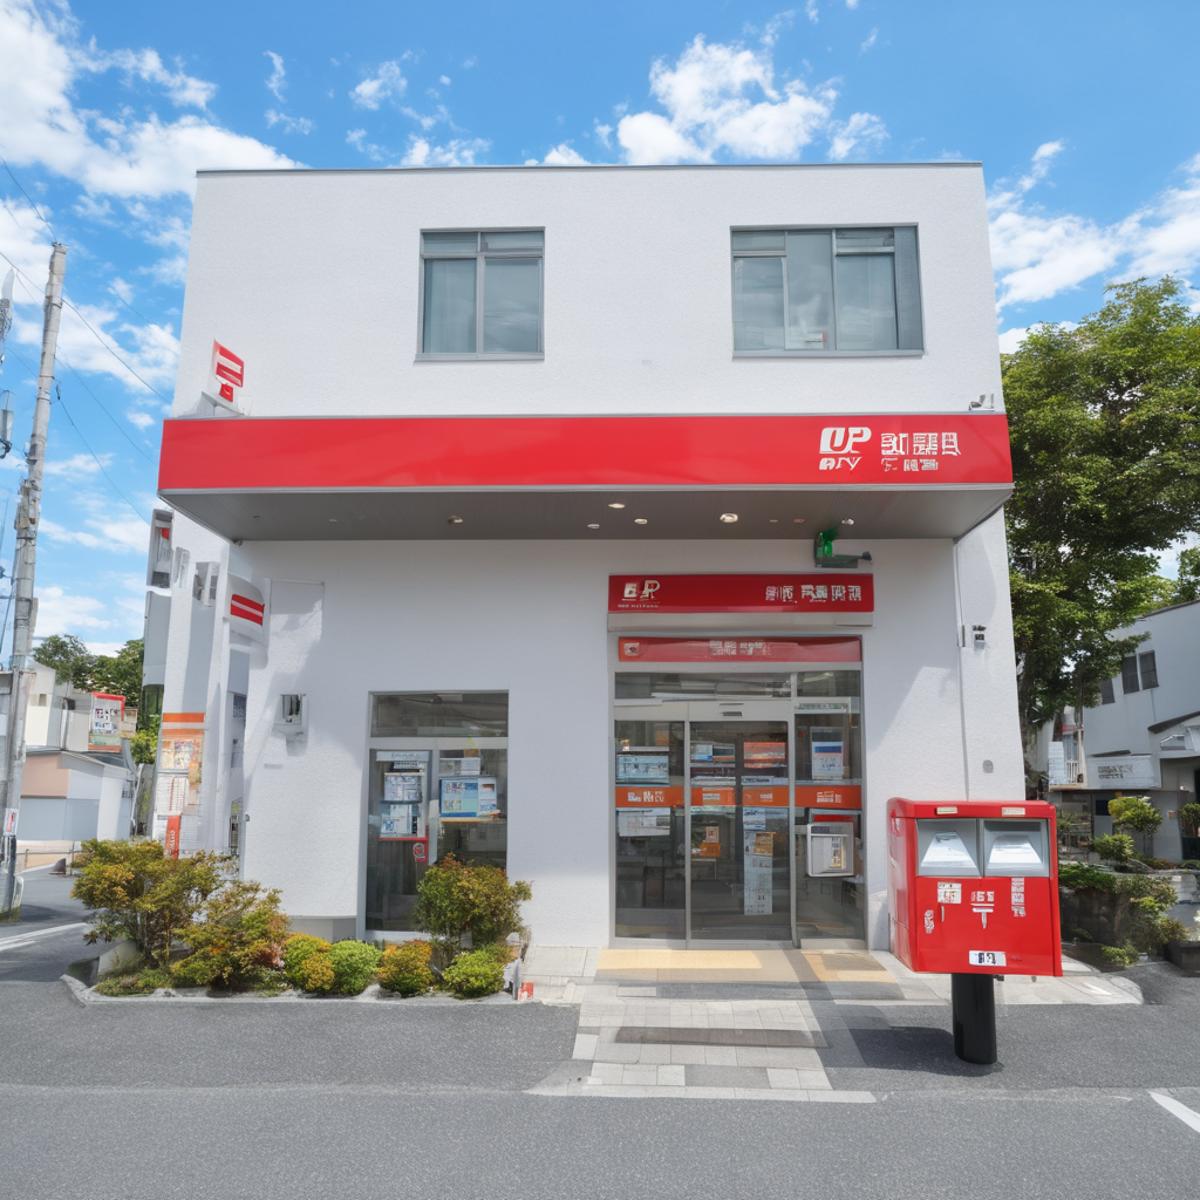 郵便局 Japan Post Office SDXL image by swingwings